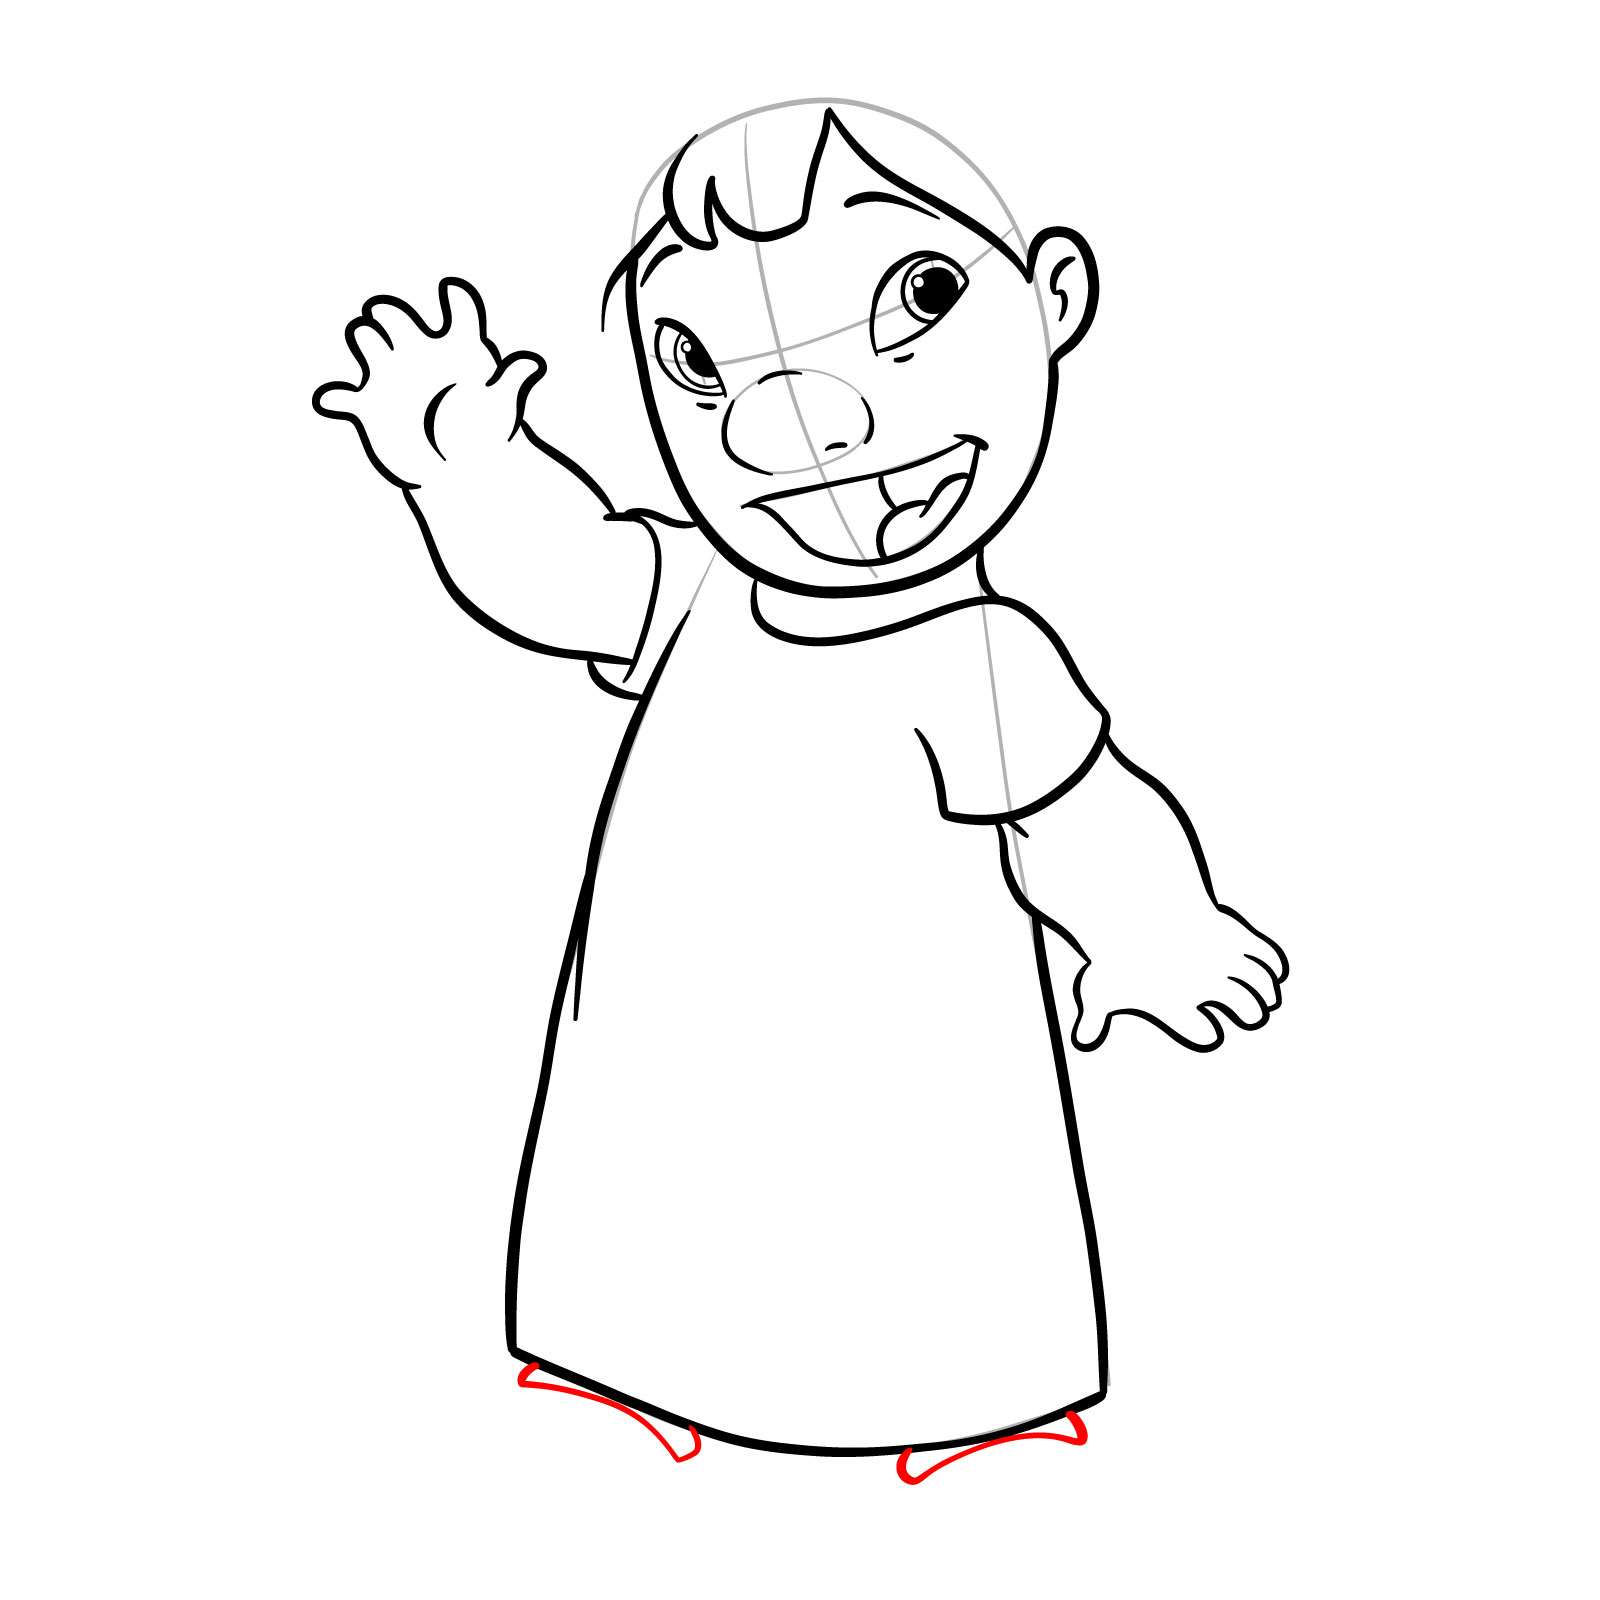 How to draw Lilo from Lilo & Stitch - step 19